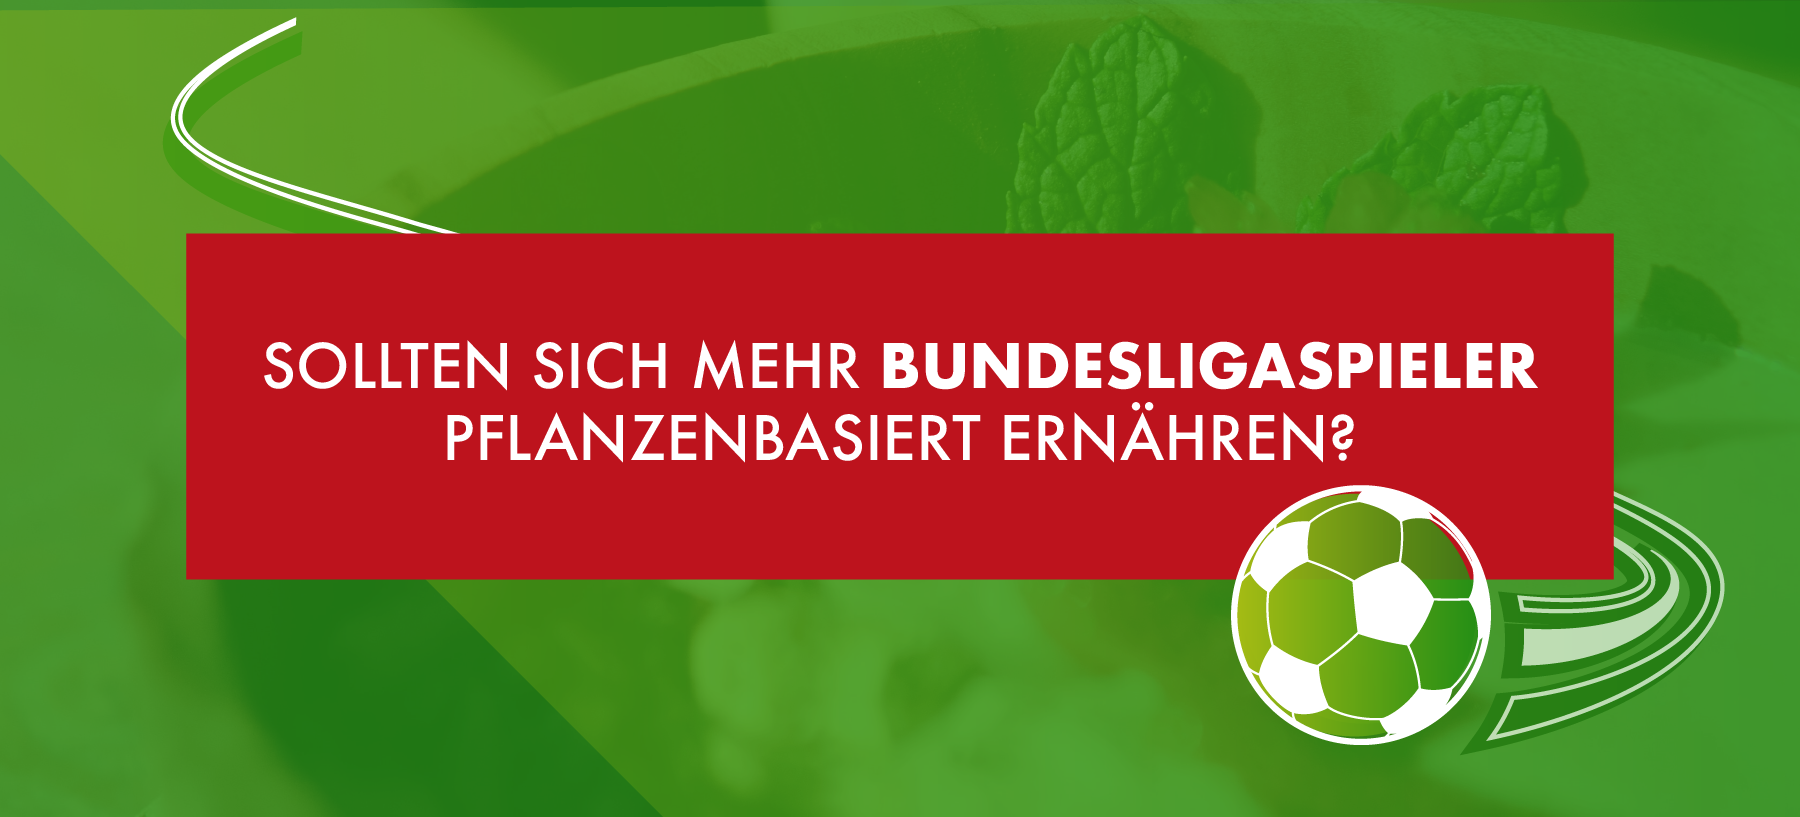 Sollten sich mehr Bundesligaspieler pflanzenbasiert ernähren?